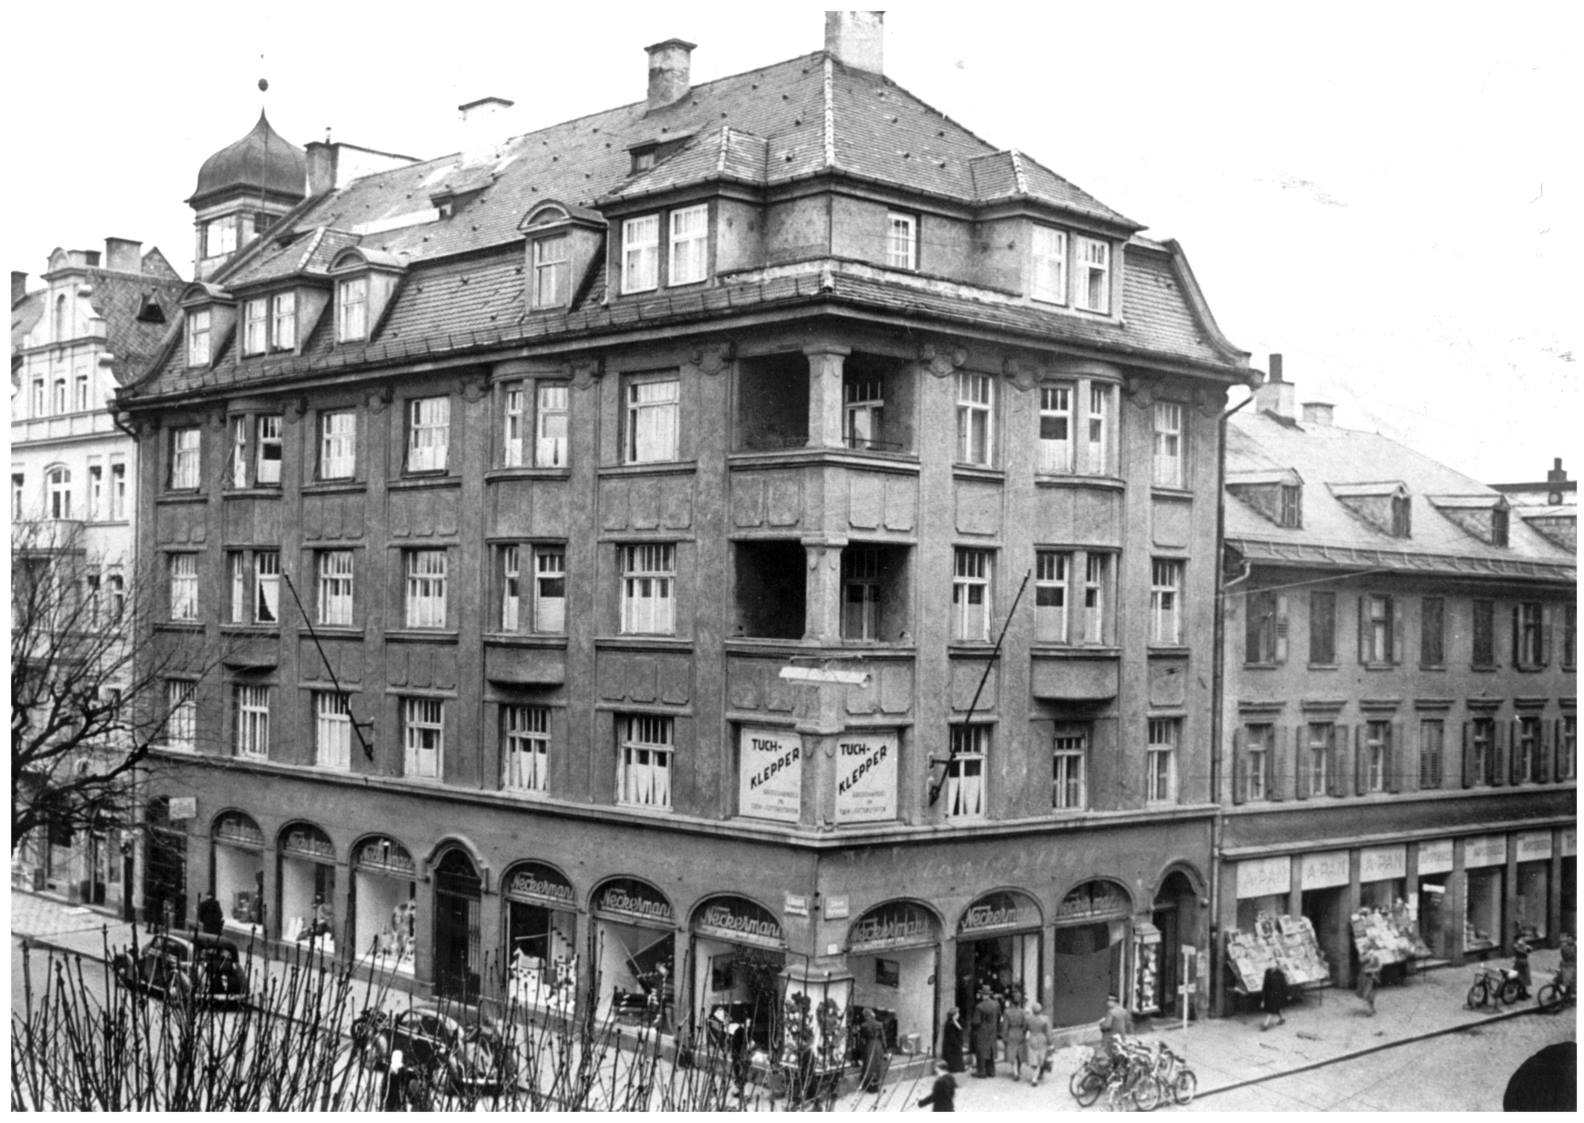 Ecke Münchener Straße / Rathausstraße in den 1940er Jahren. Foto: Archiv Herbert Borrmann